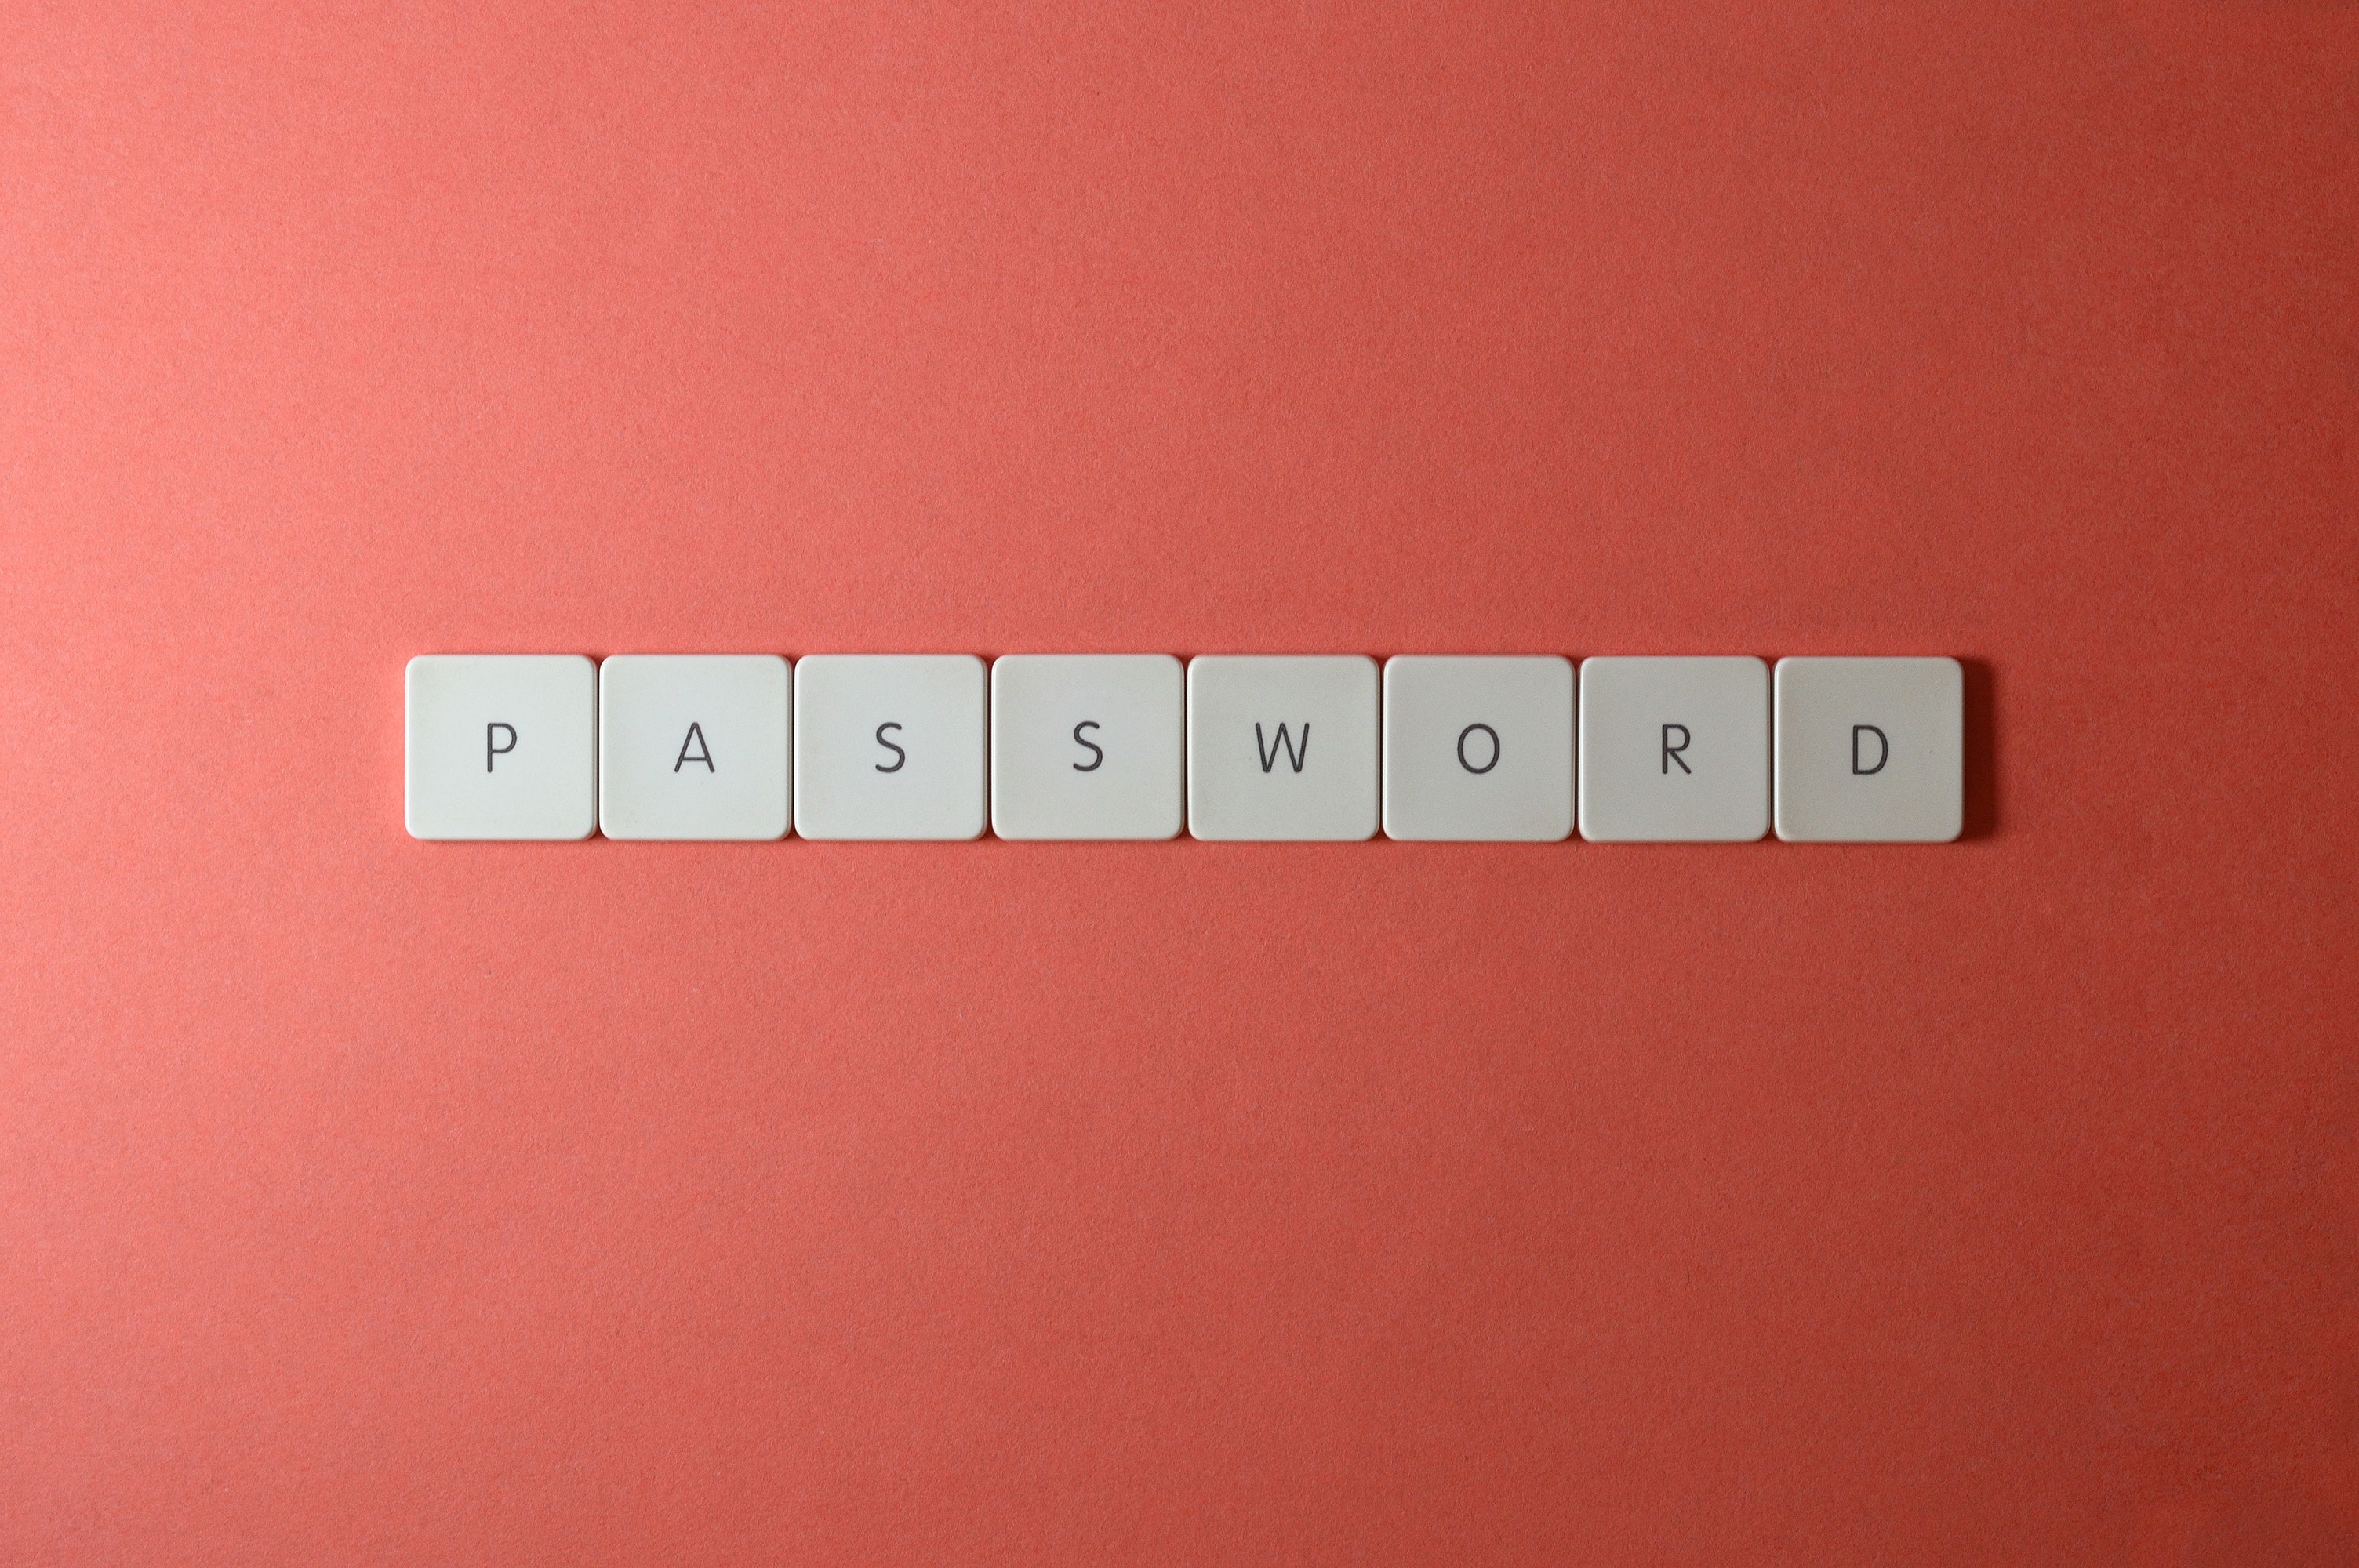 password written in scrabble tiles